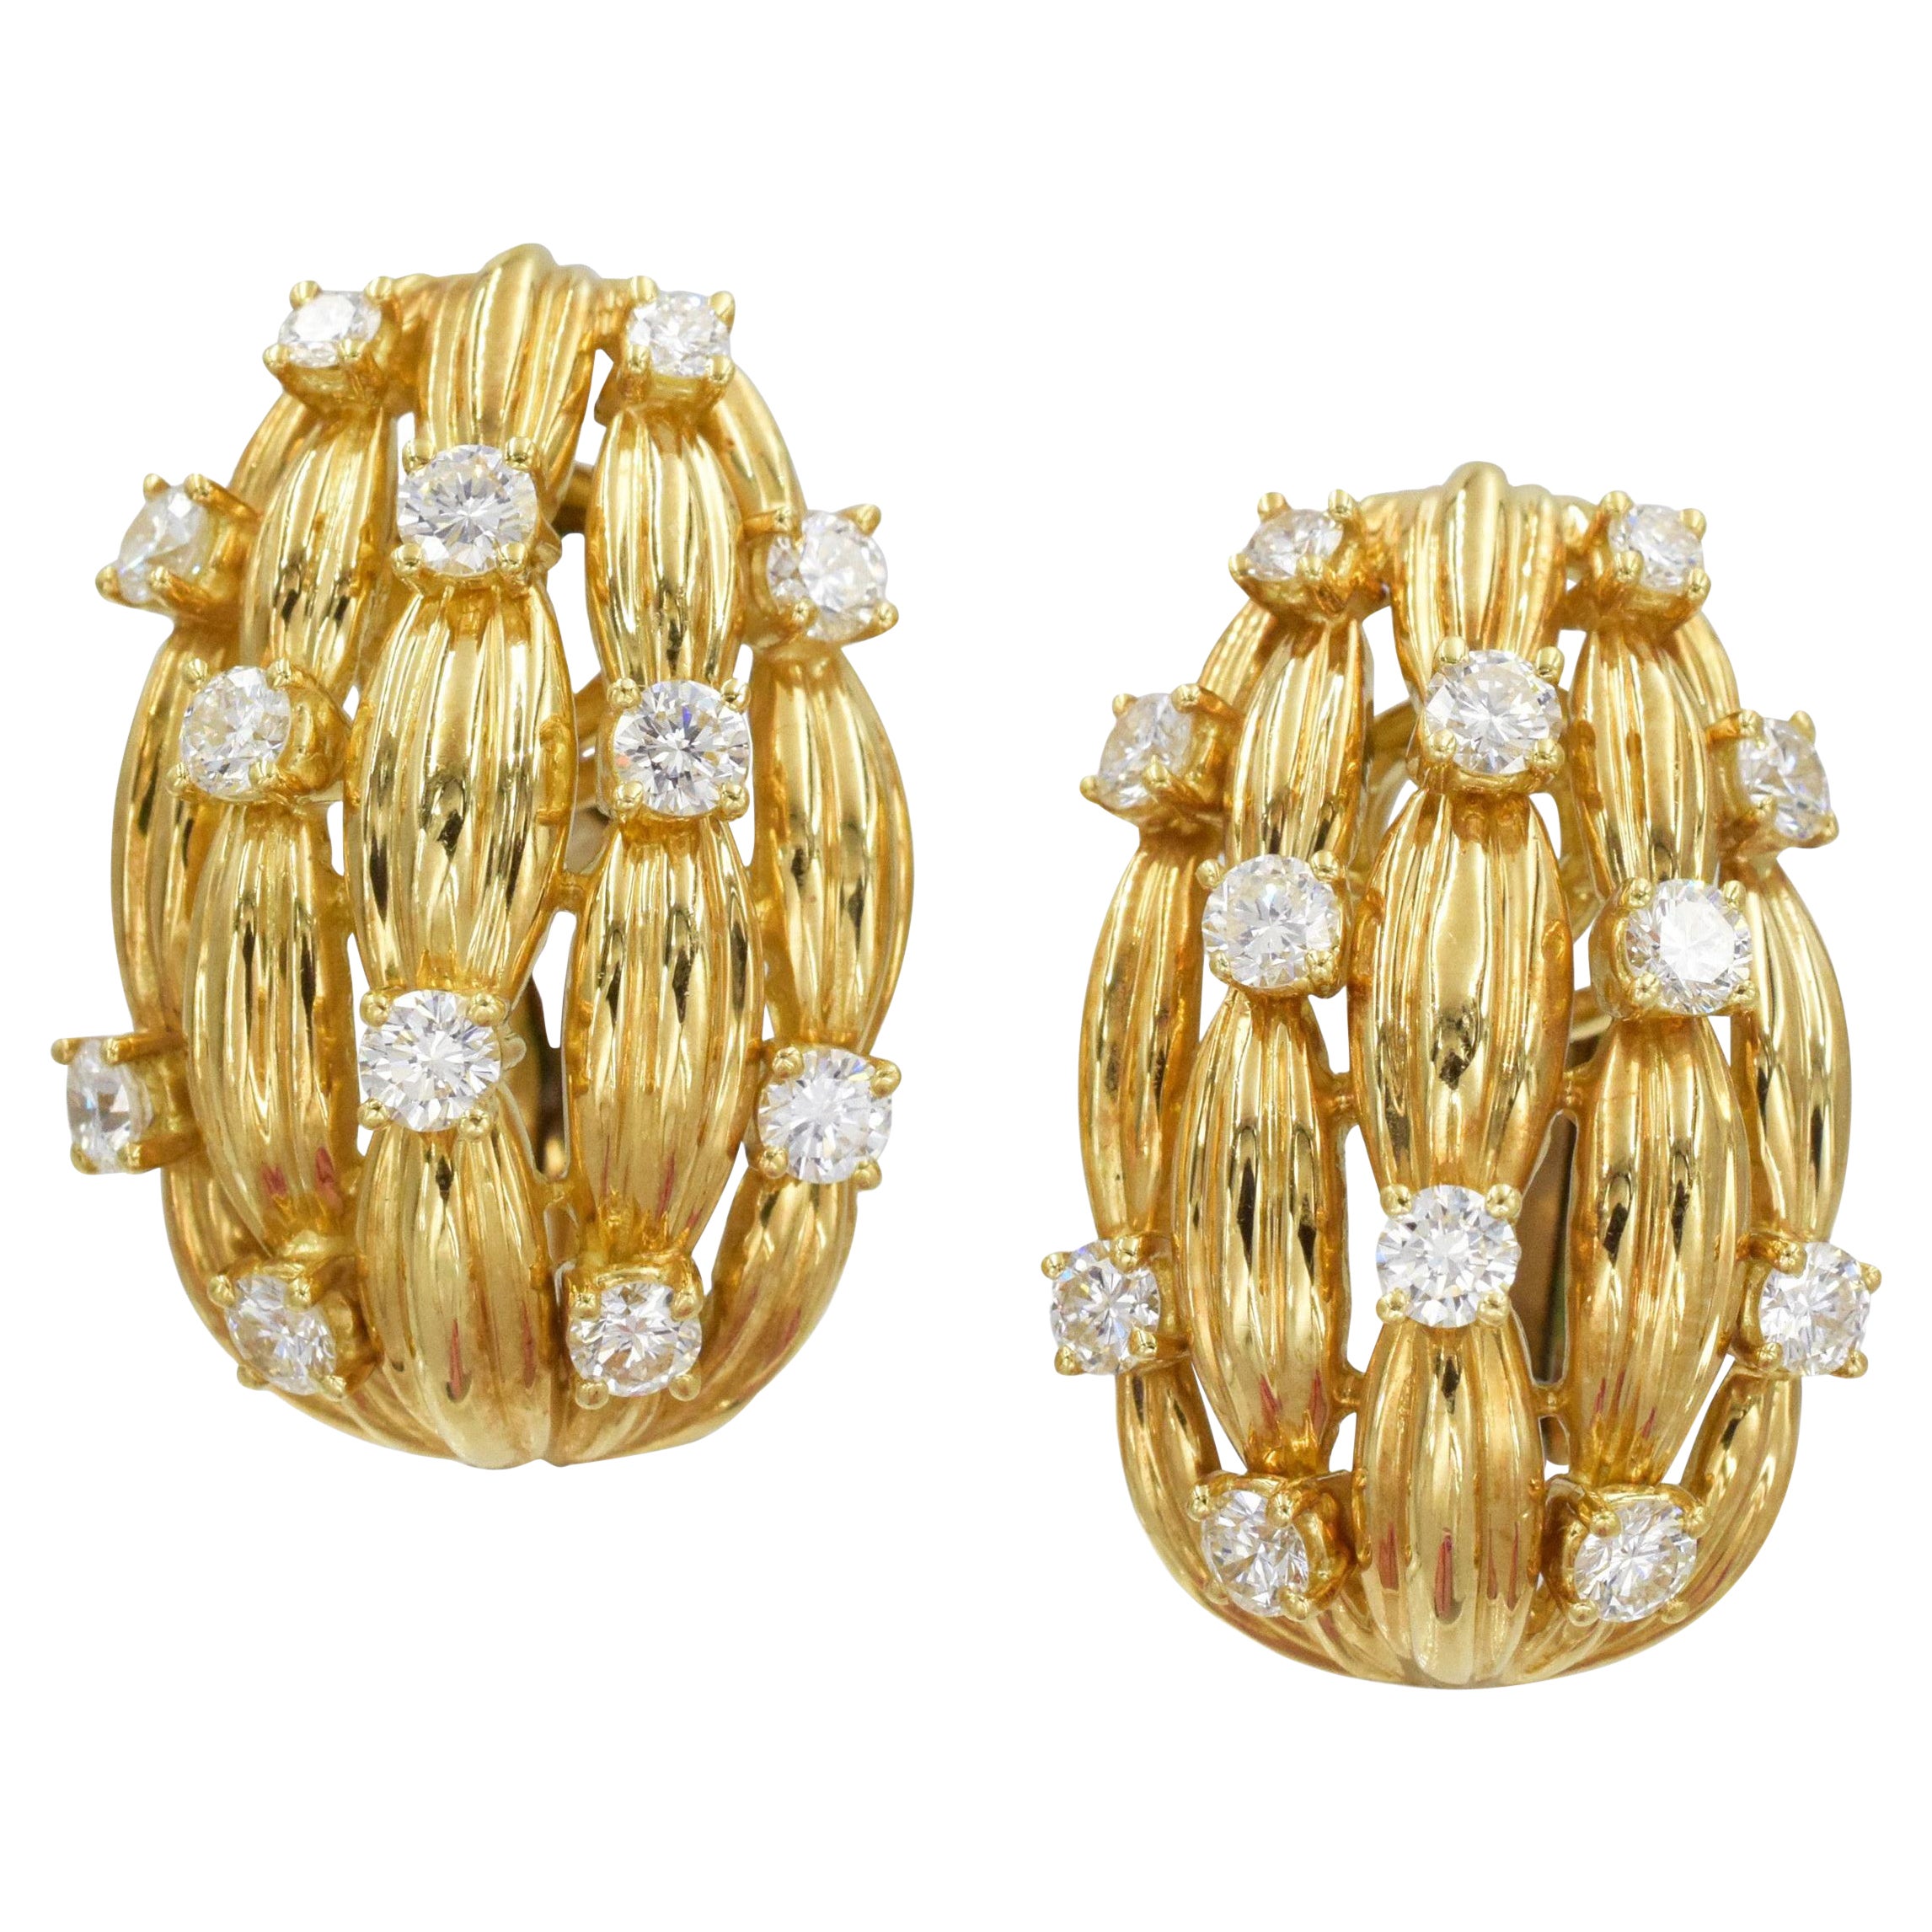 Tiffany & Co. Earrings